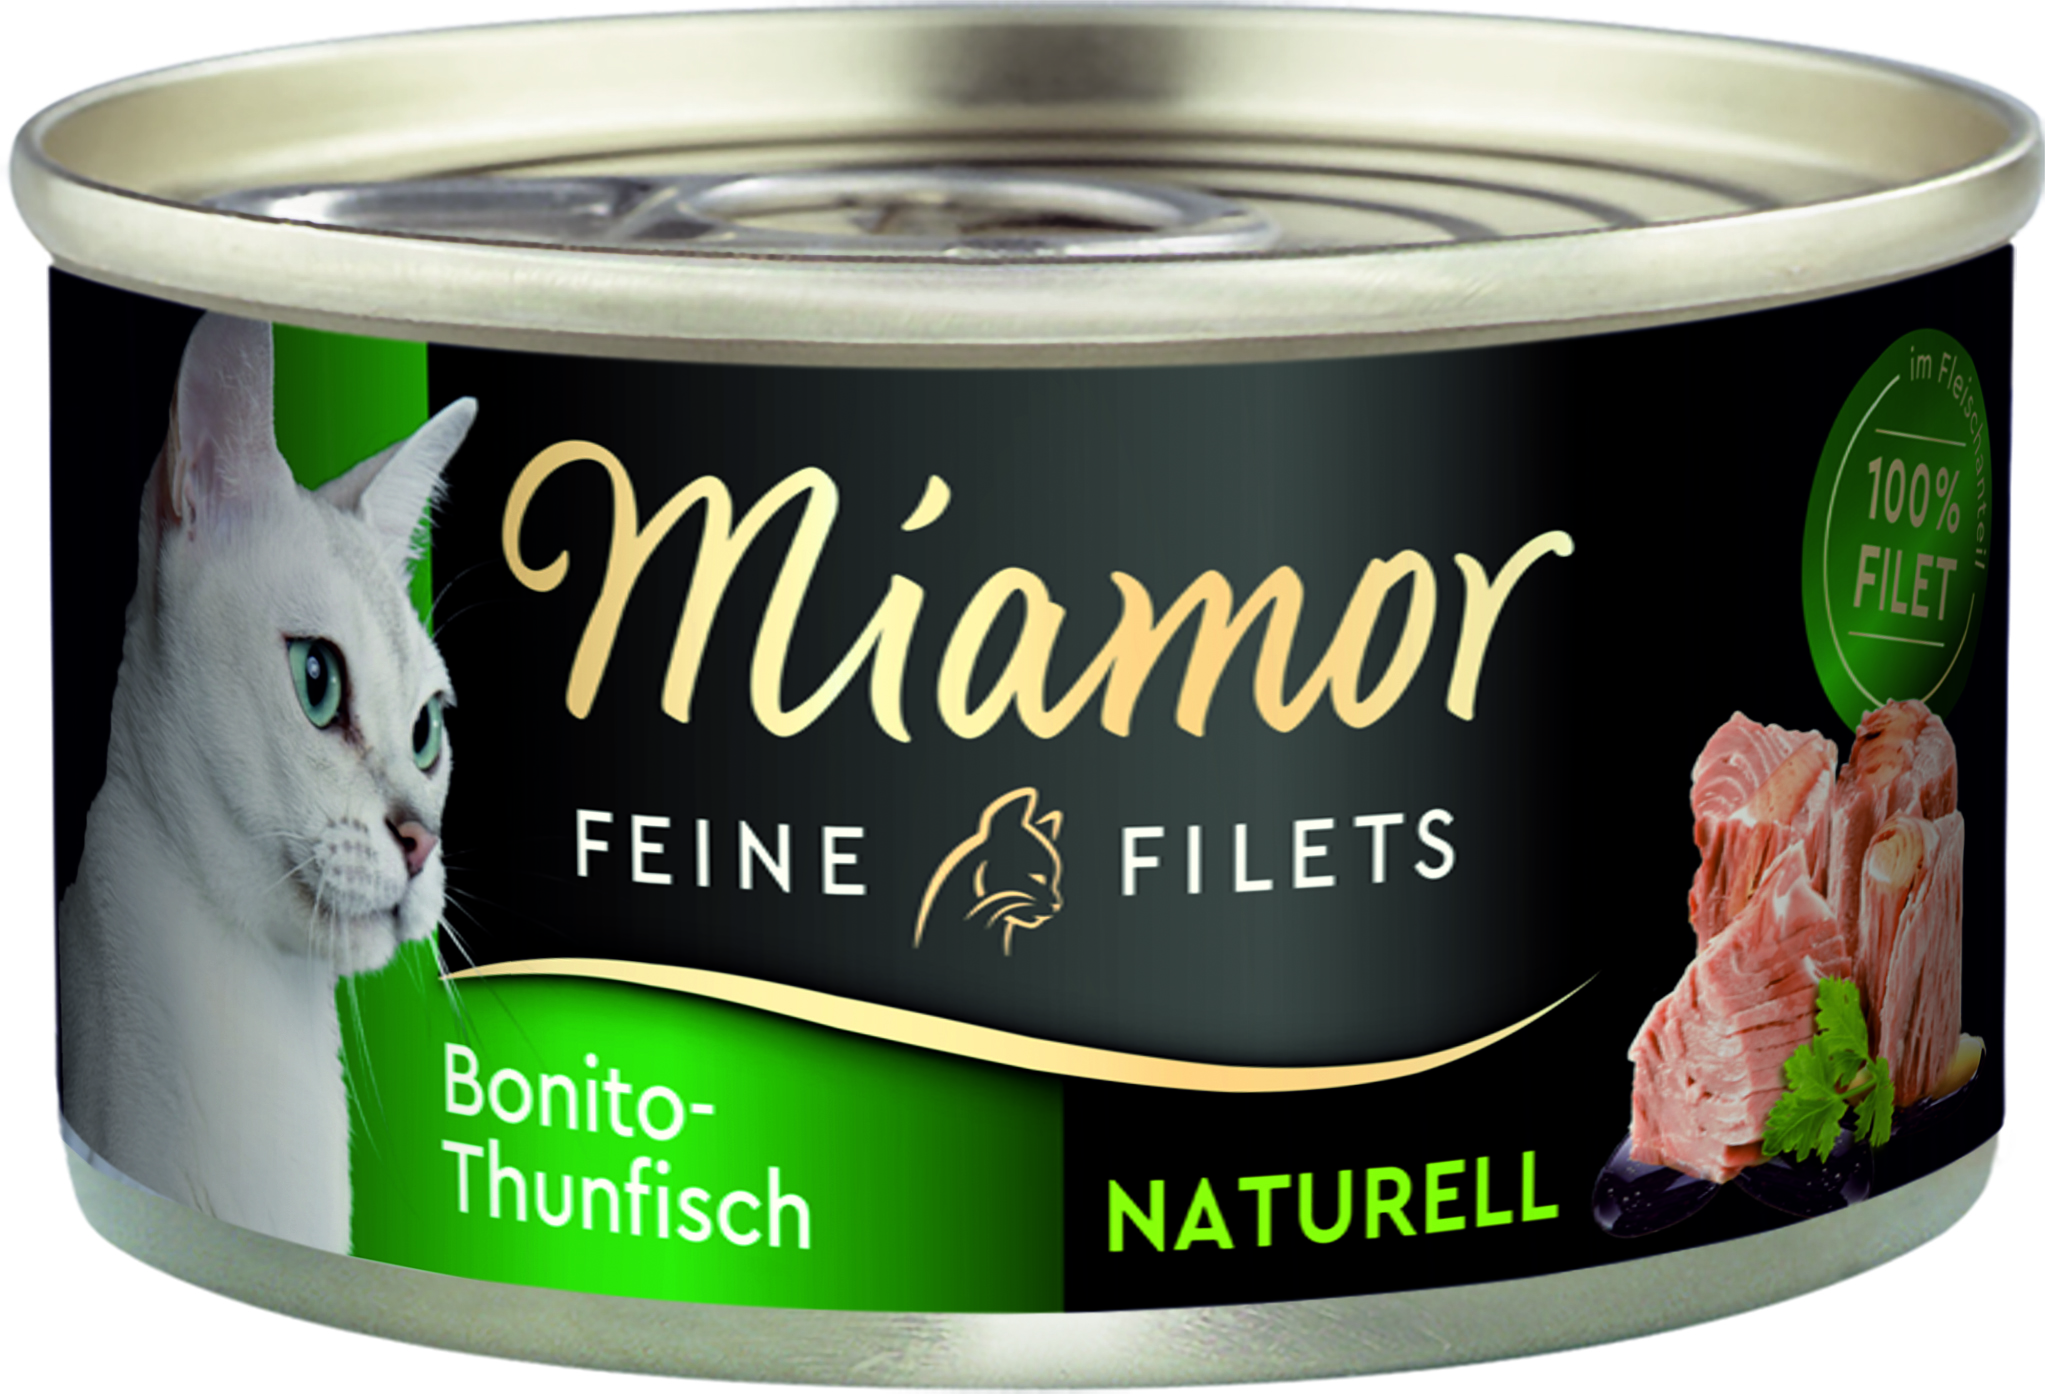 Miamor Feine Filets Naturell Bonito-Thunfisch 80g